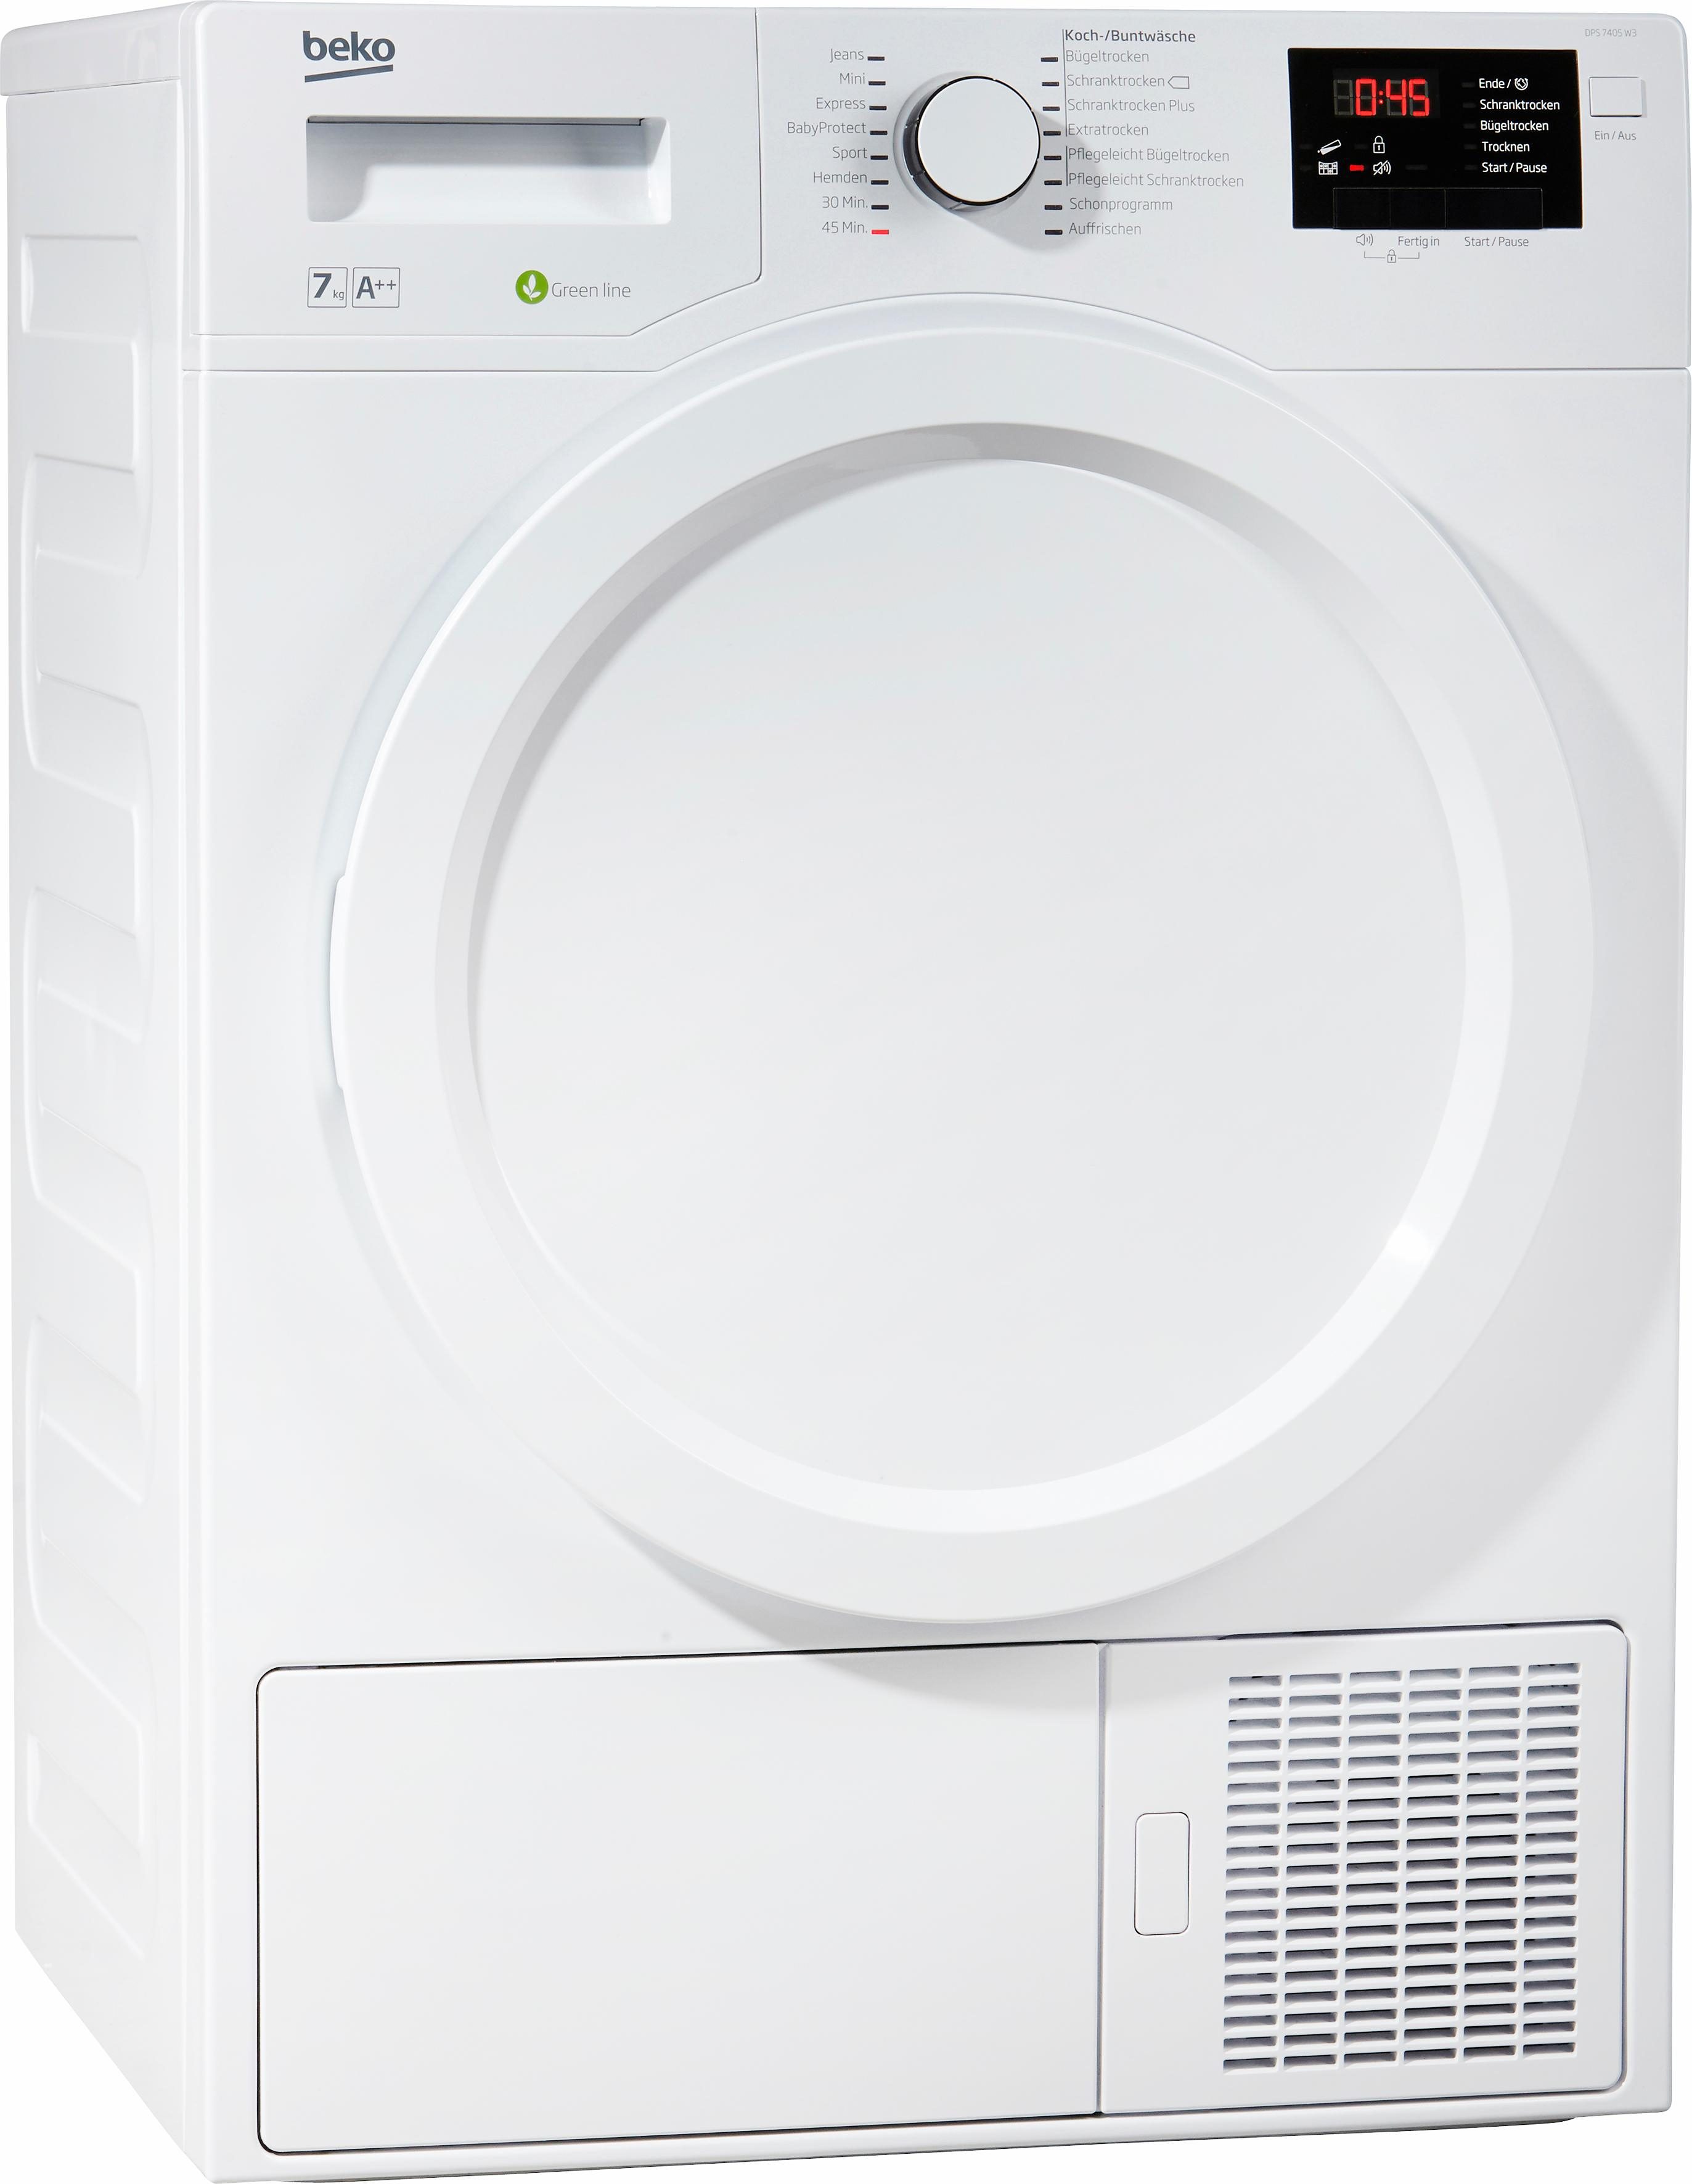 BEKO Wärmepumpentrockner DPS 7405 W3, 7 kg A++ (A+++ bis D) weiß Trockner Haushaltsgeräte